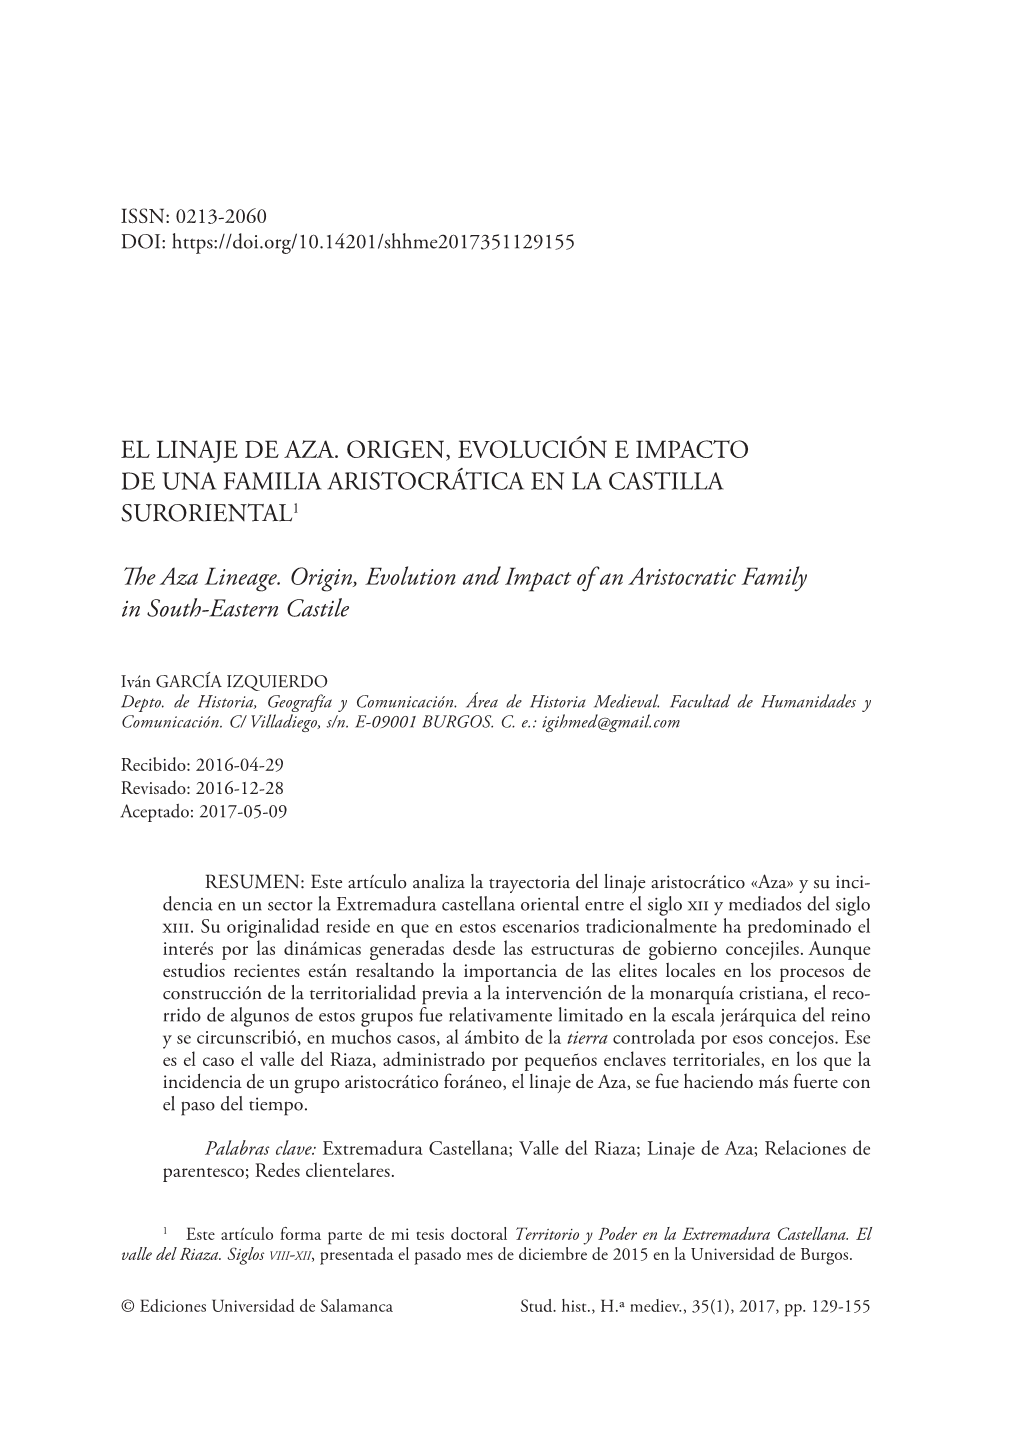 El Linaje De Aza. Origen, Evolución E Impacto De Una Familia Aristocrática En La Castilla Suroriental1